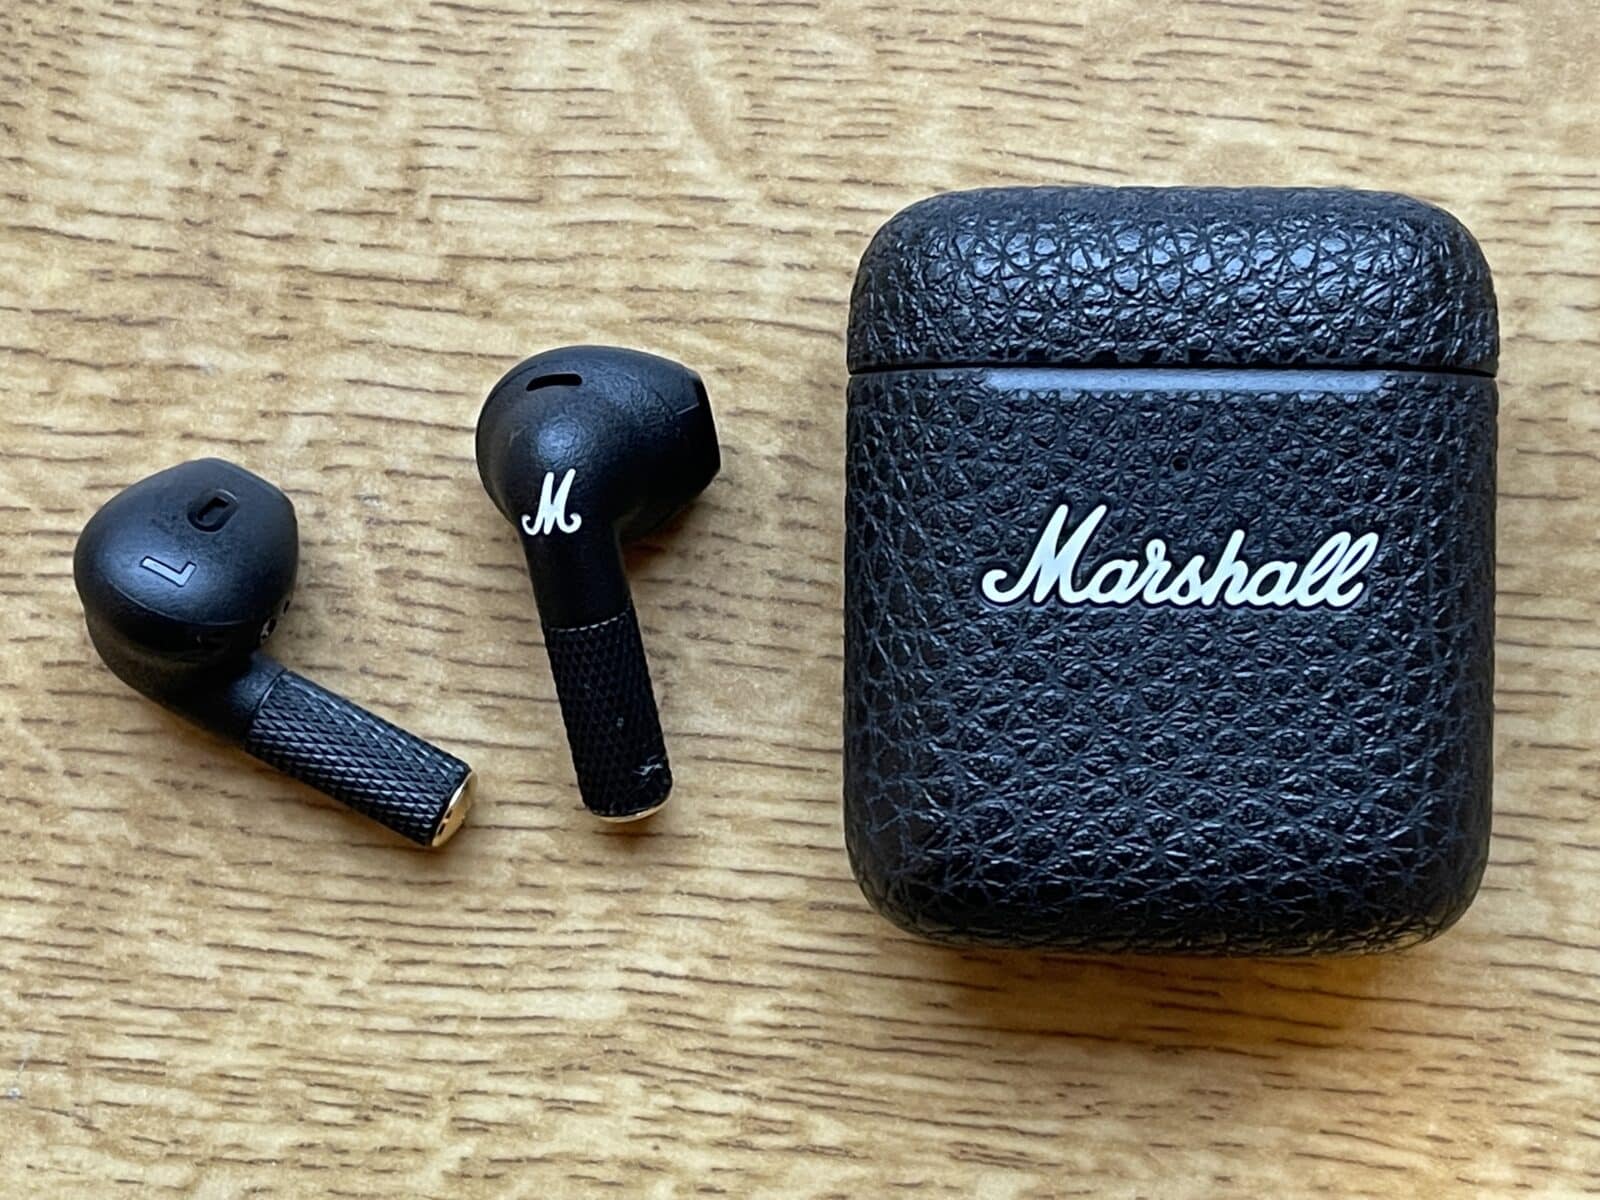 Test : Marshall Minor III, des écouteurs convaincants au design atypique